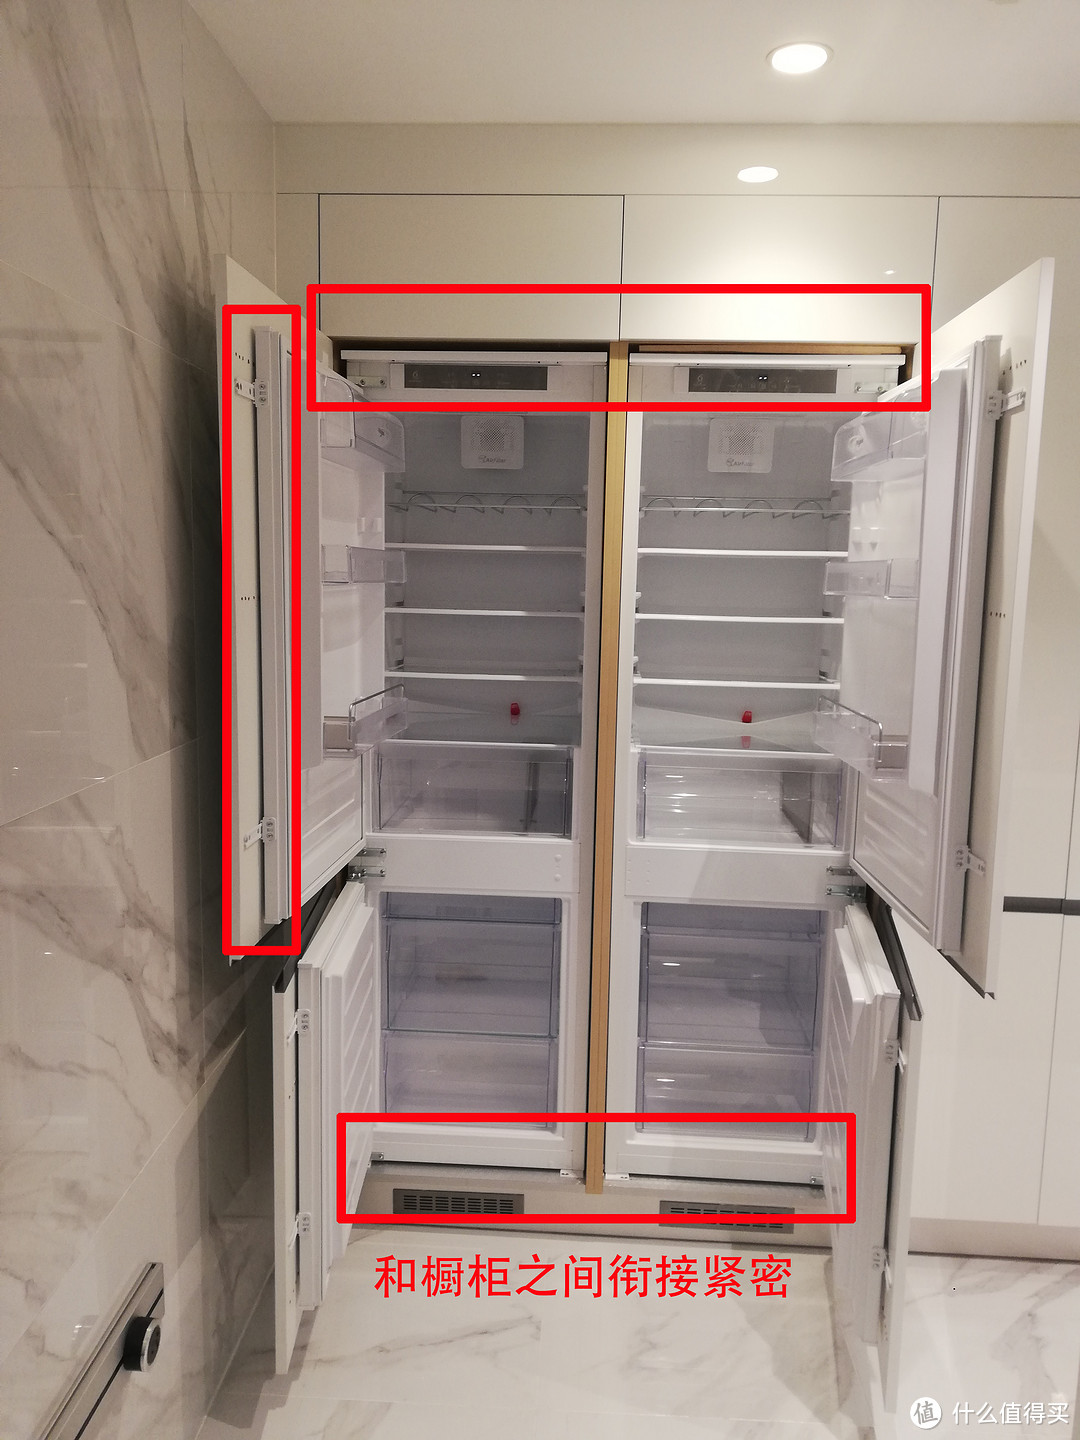 冰箱柜子一体式效果图,酒柜连冰箱效果图大全 - 伤感说说吧